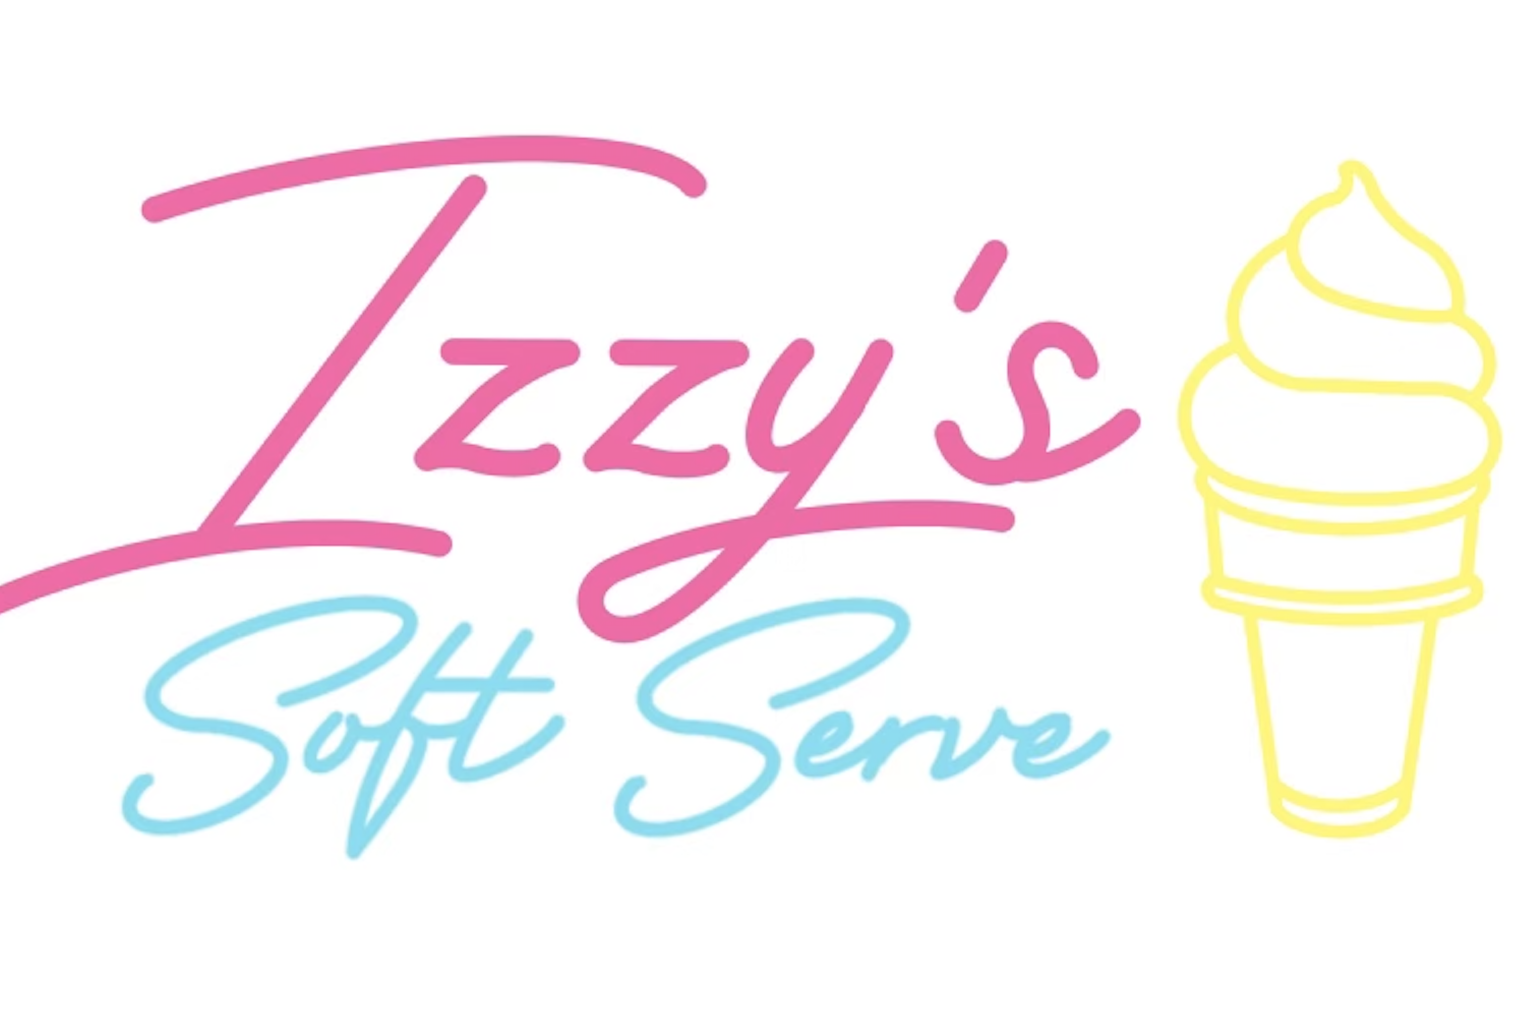 Izzy's Soft Serve Ice Cream